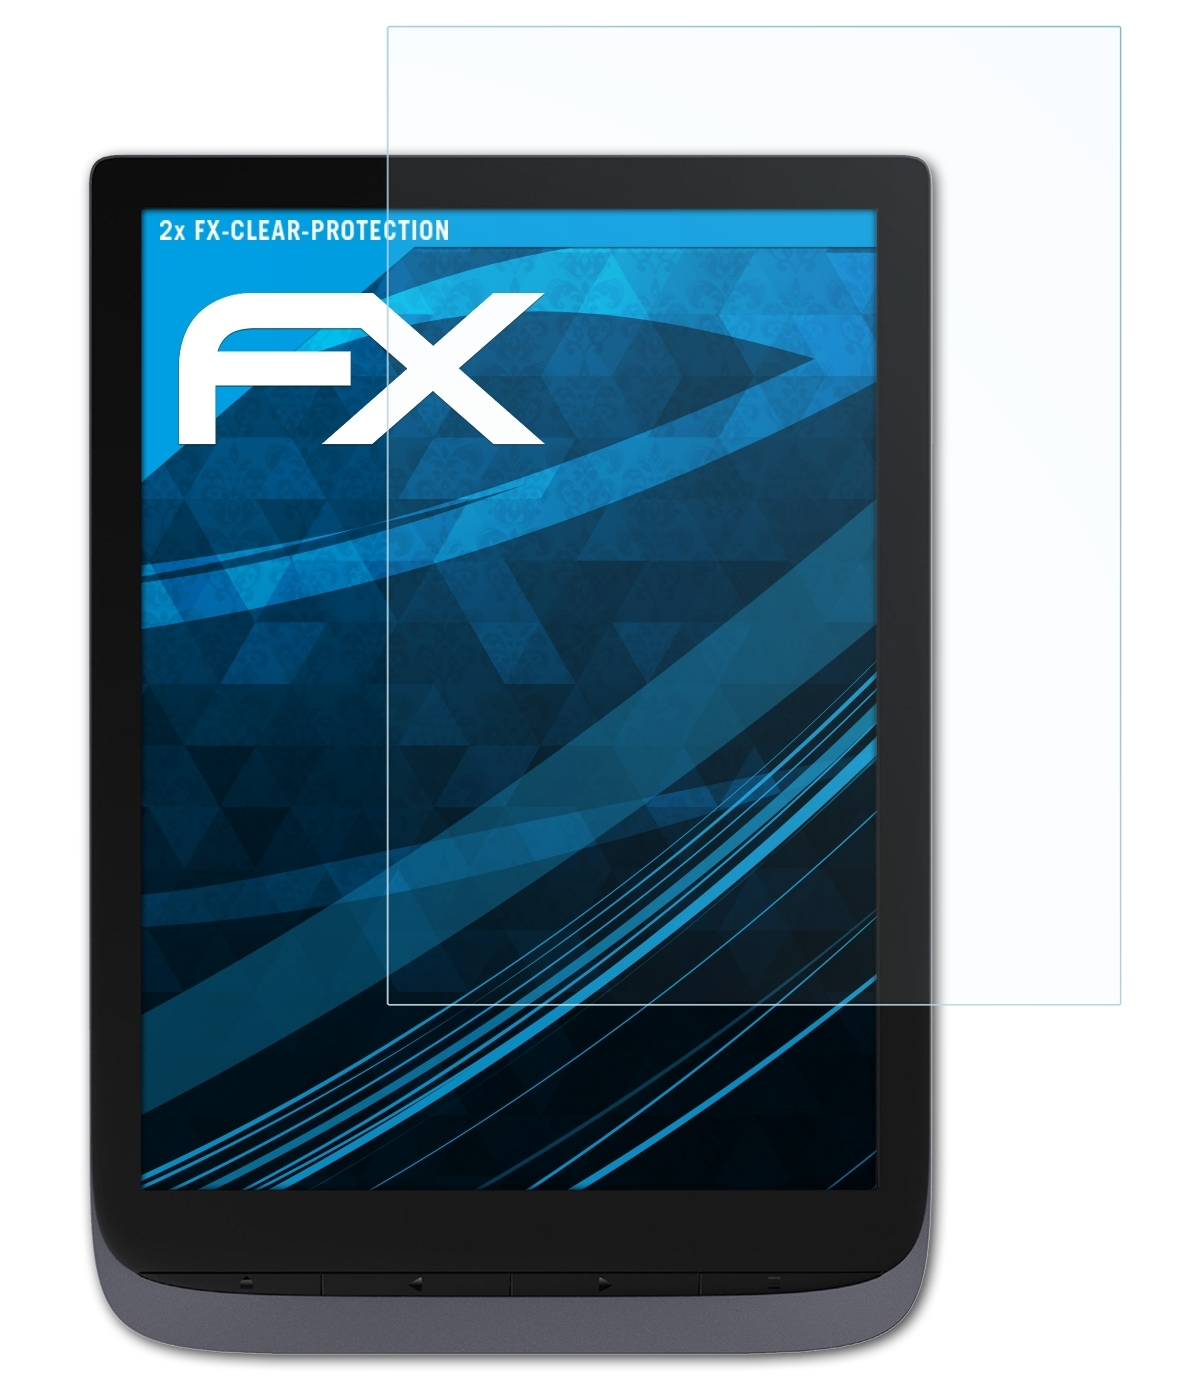 ATFOLIX 2x FX-Clear Displayschutz(für Pro) PocketBook InkPad 3